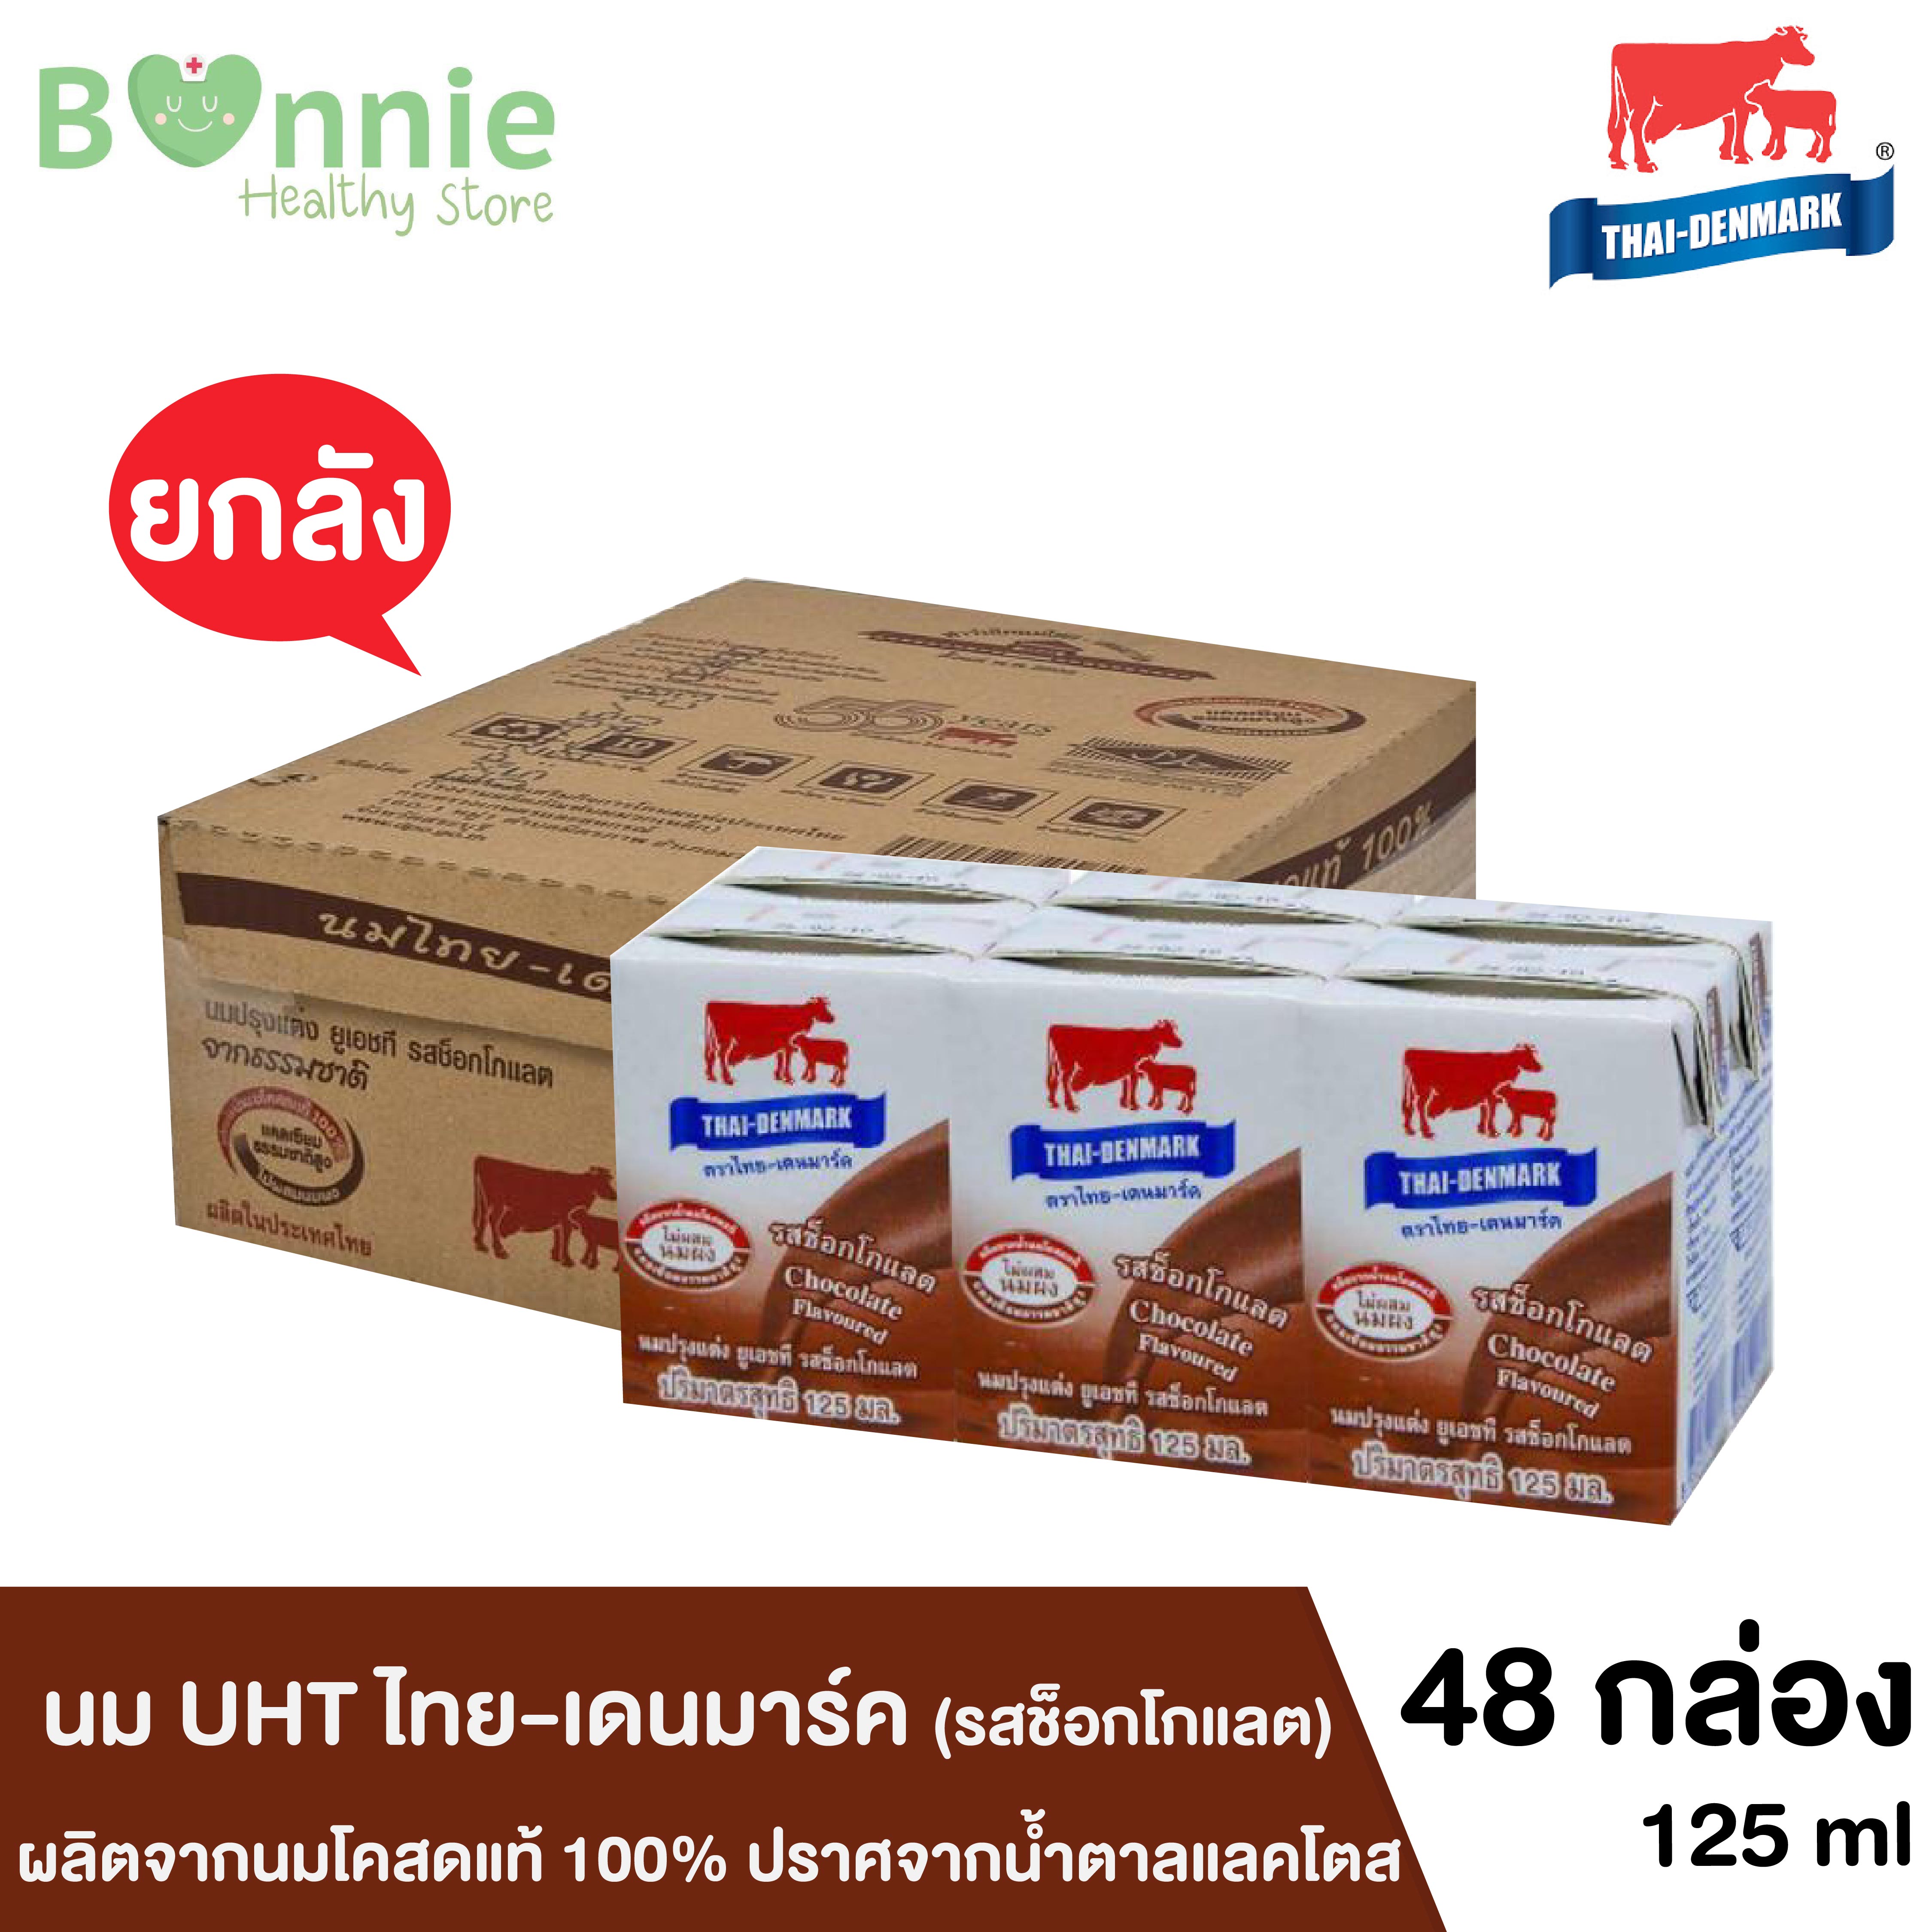 [ยกลัง] นม UHT ไทย-เดนมาร์ค นมกล่องวัวแดง ปราศจากน้ำตาลแลคโตส รสช็อกโกแลต ผลิตจากนมโคสดแท้ 1005 มล. จำนวน 48 กล่อง